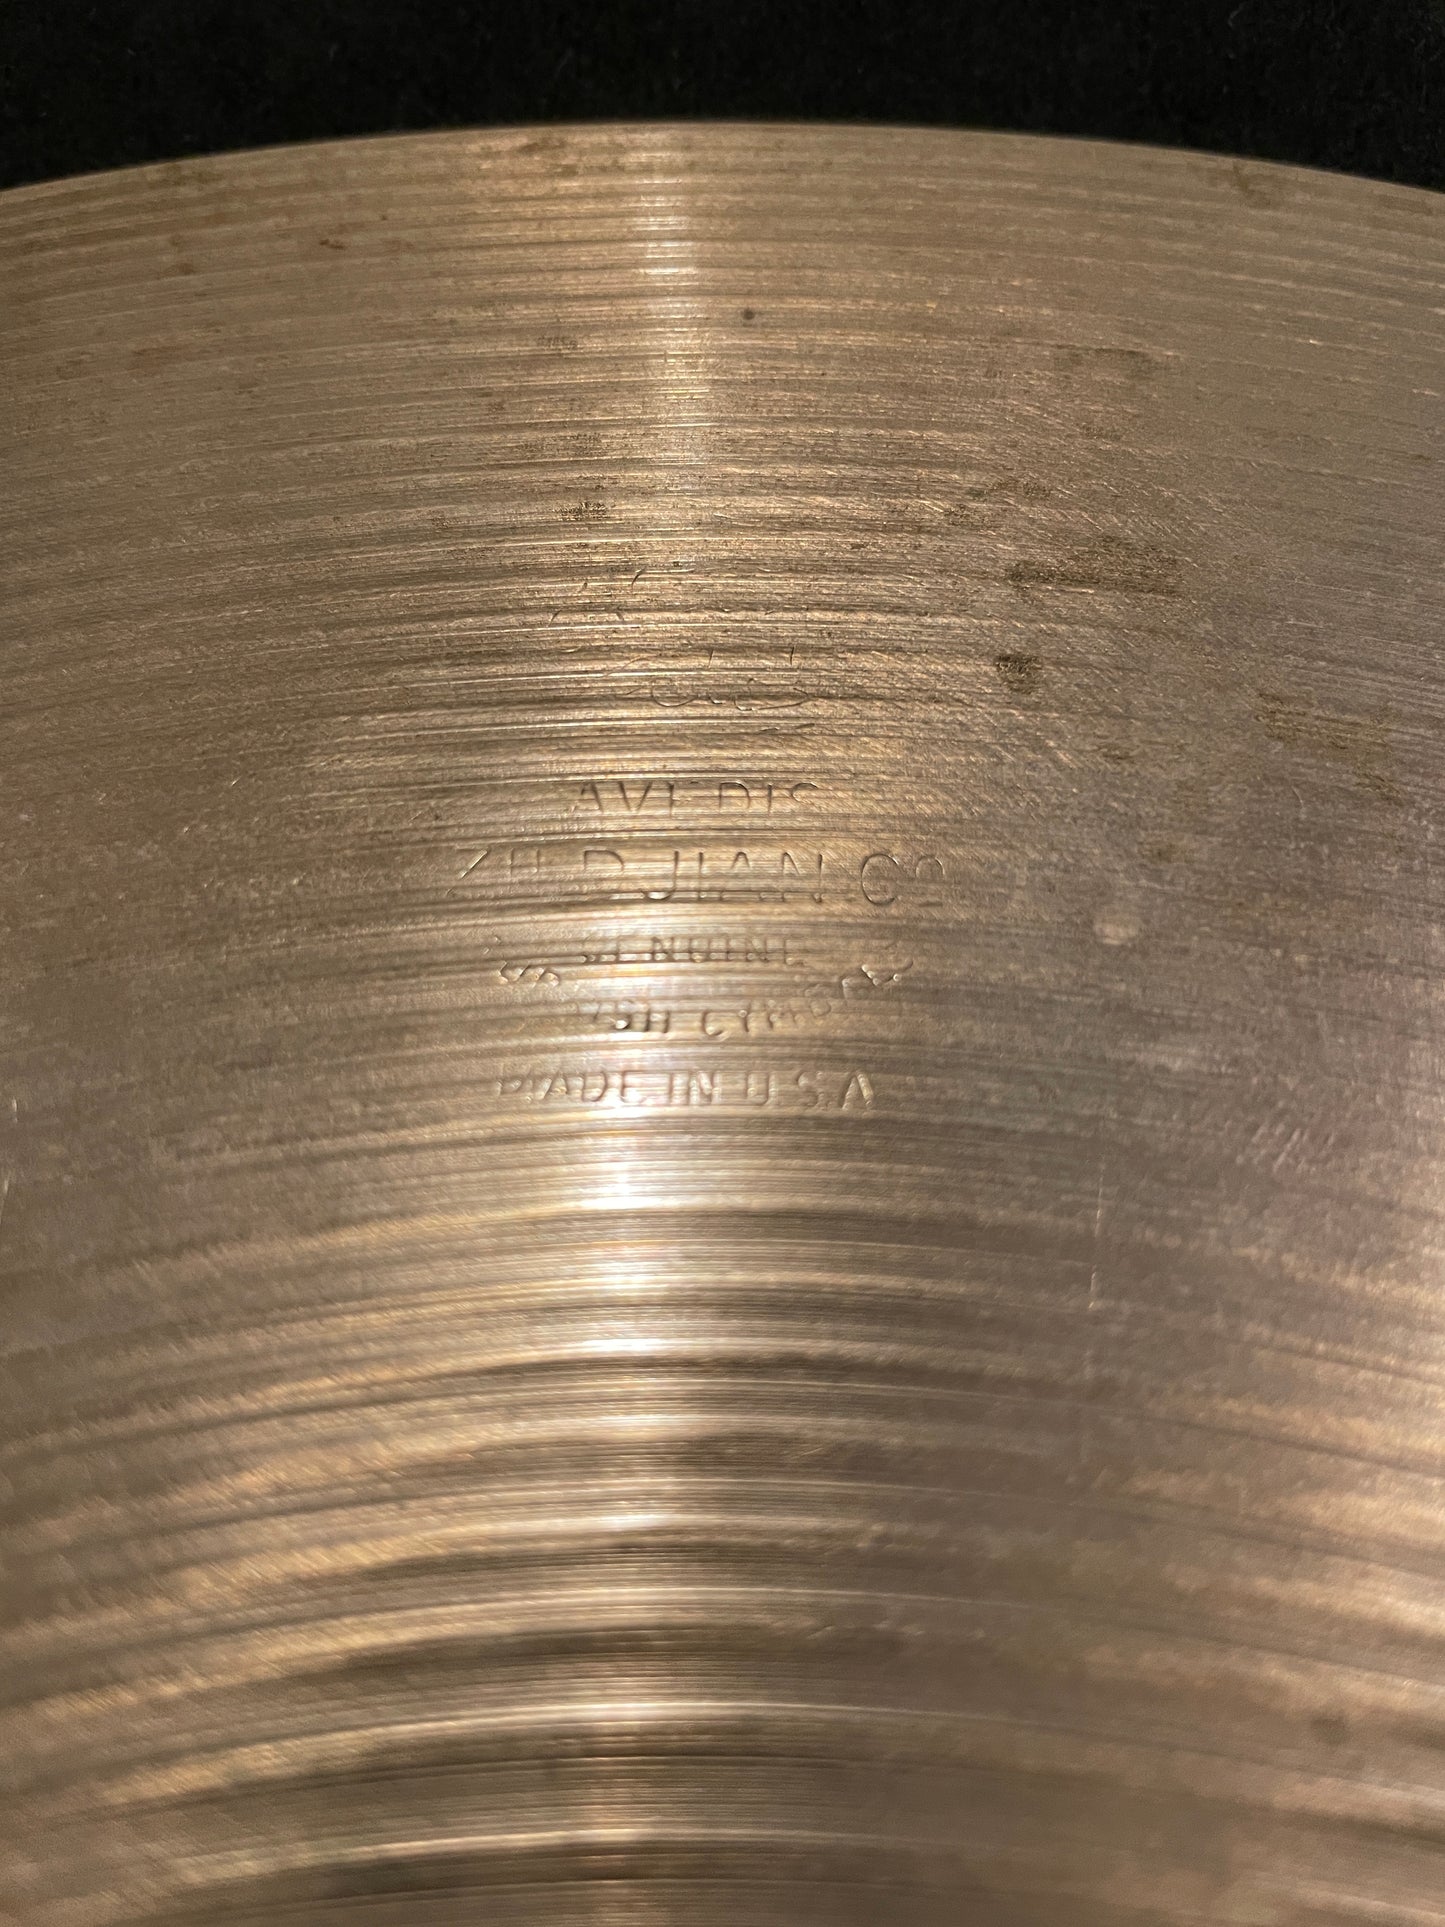 16" Zildjian A 1970s Crash / Bottom Hi-Hat Cymbal 1316g #175